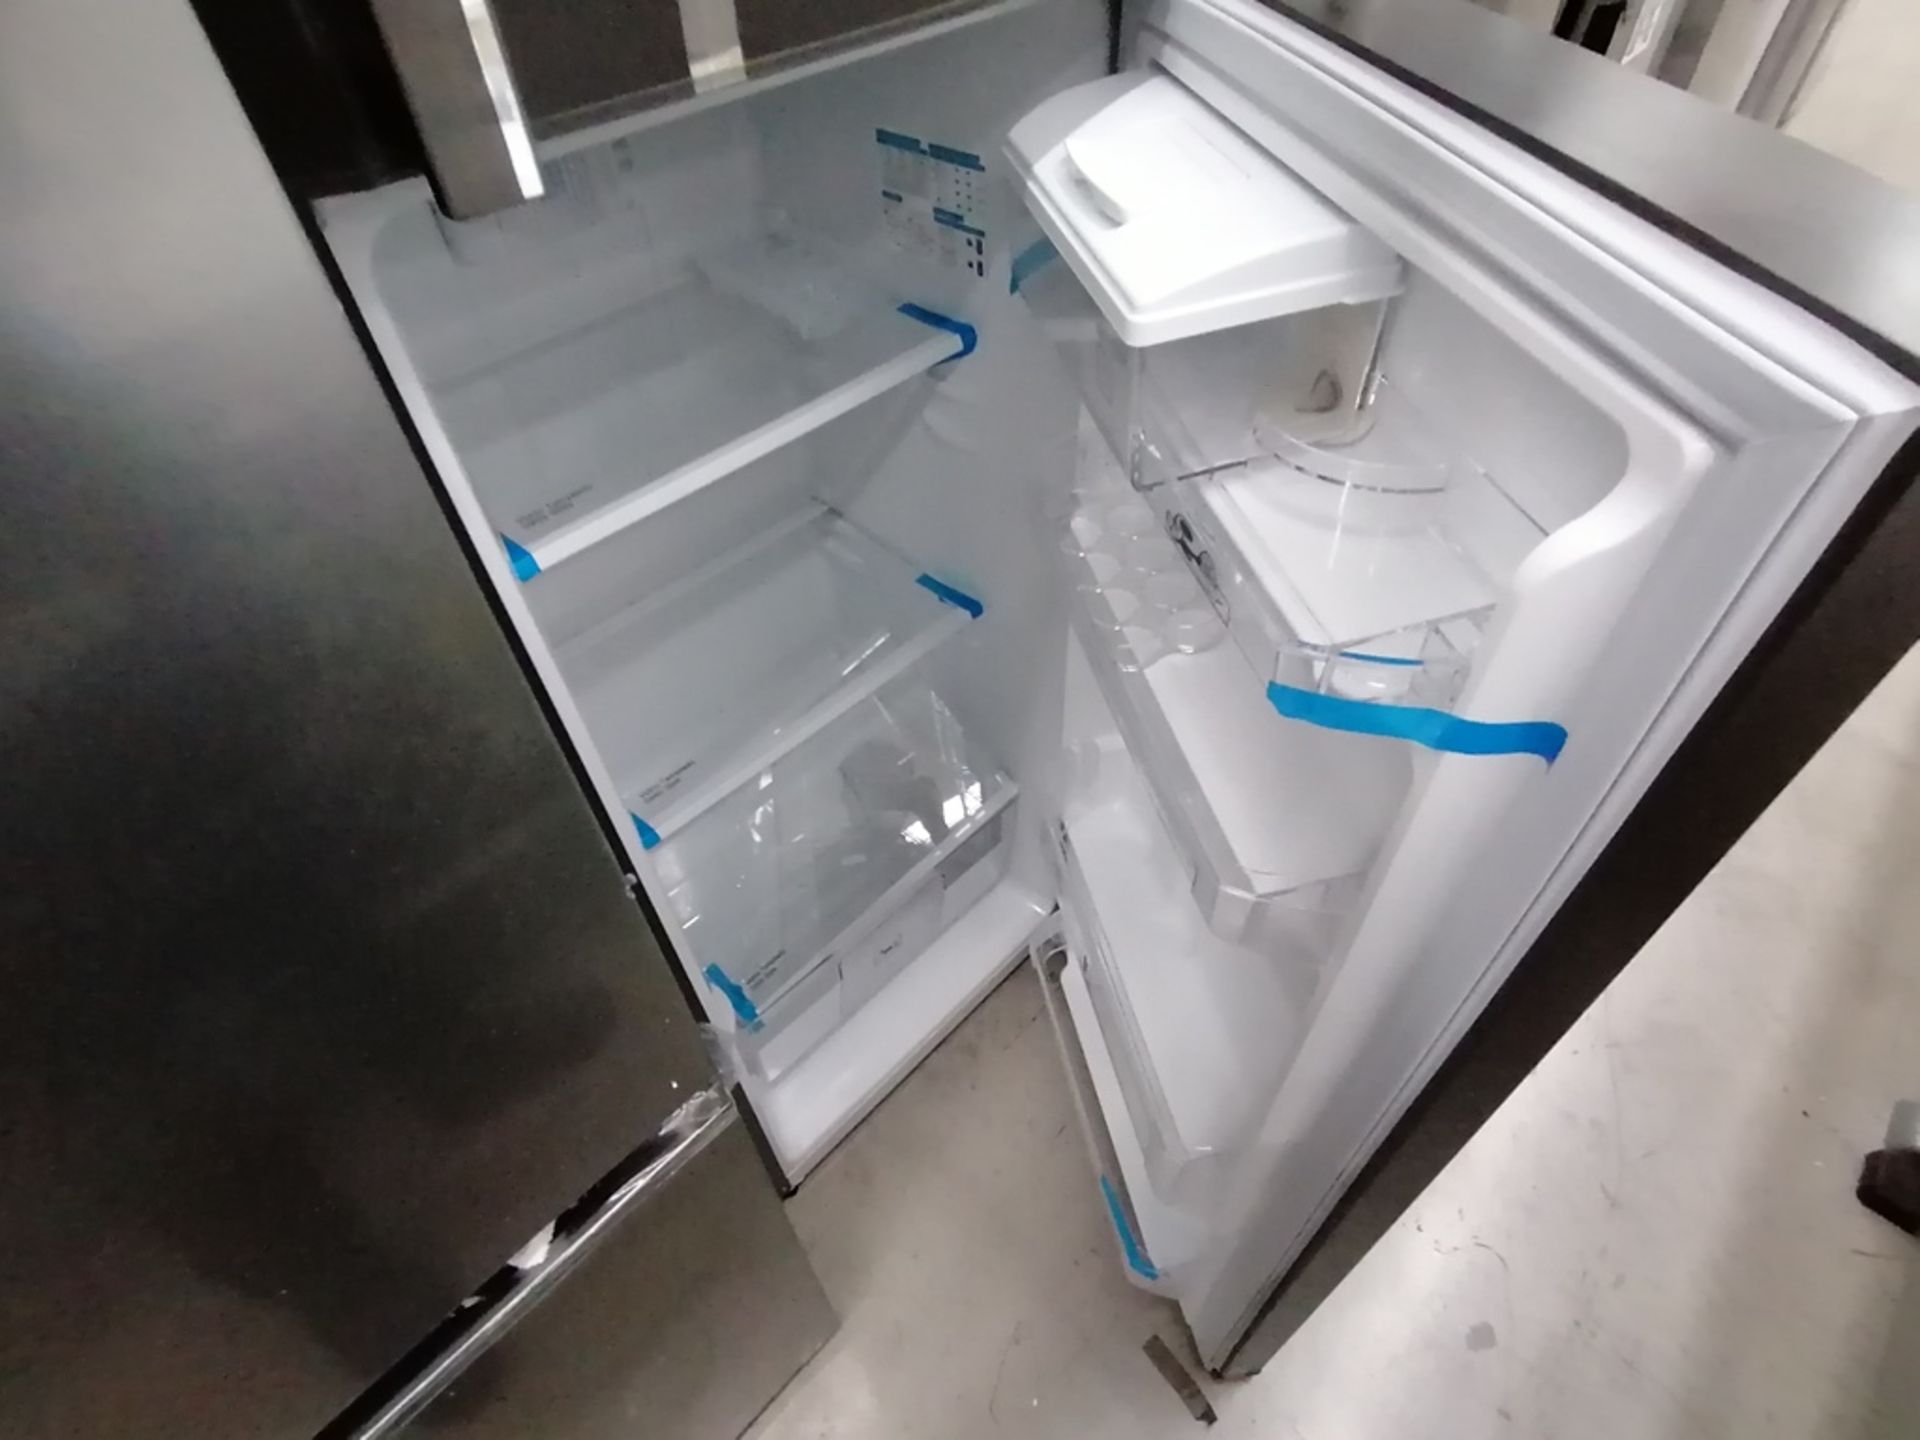 Lote de 2 refrigeradores incluye: 1 Refrigerador con dispensador de agua, Marca Mabe, Modelo RMA300 - Image 5 of 15